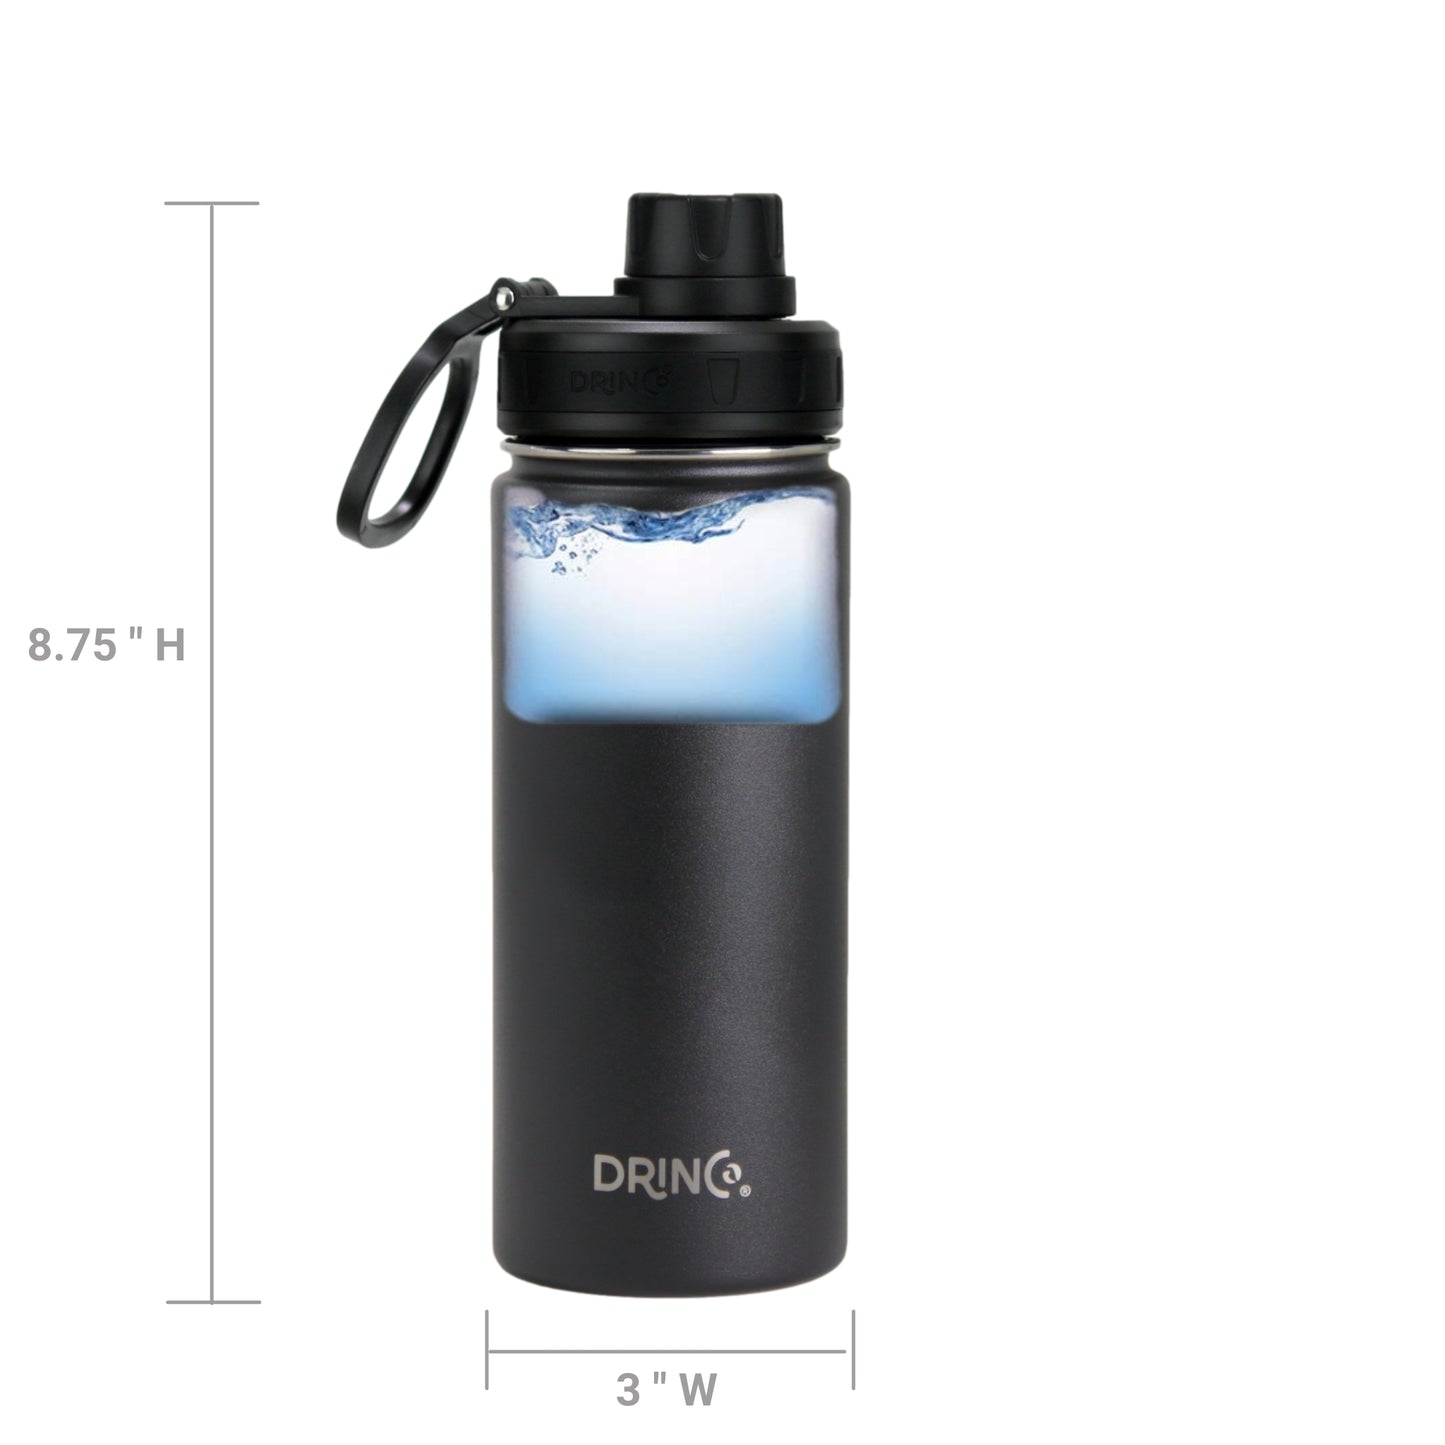 Stainless Steel Sport Water Bottle - Black